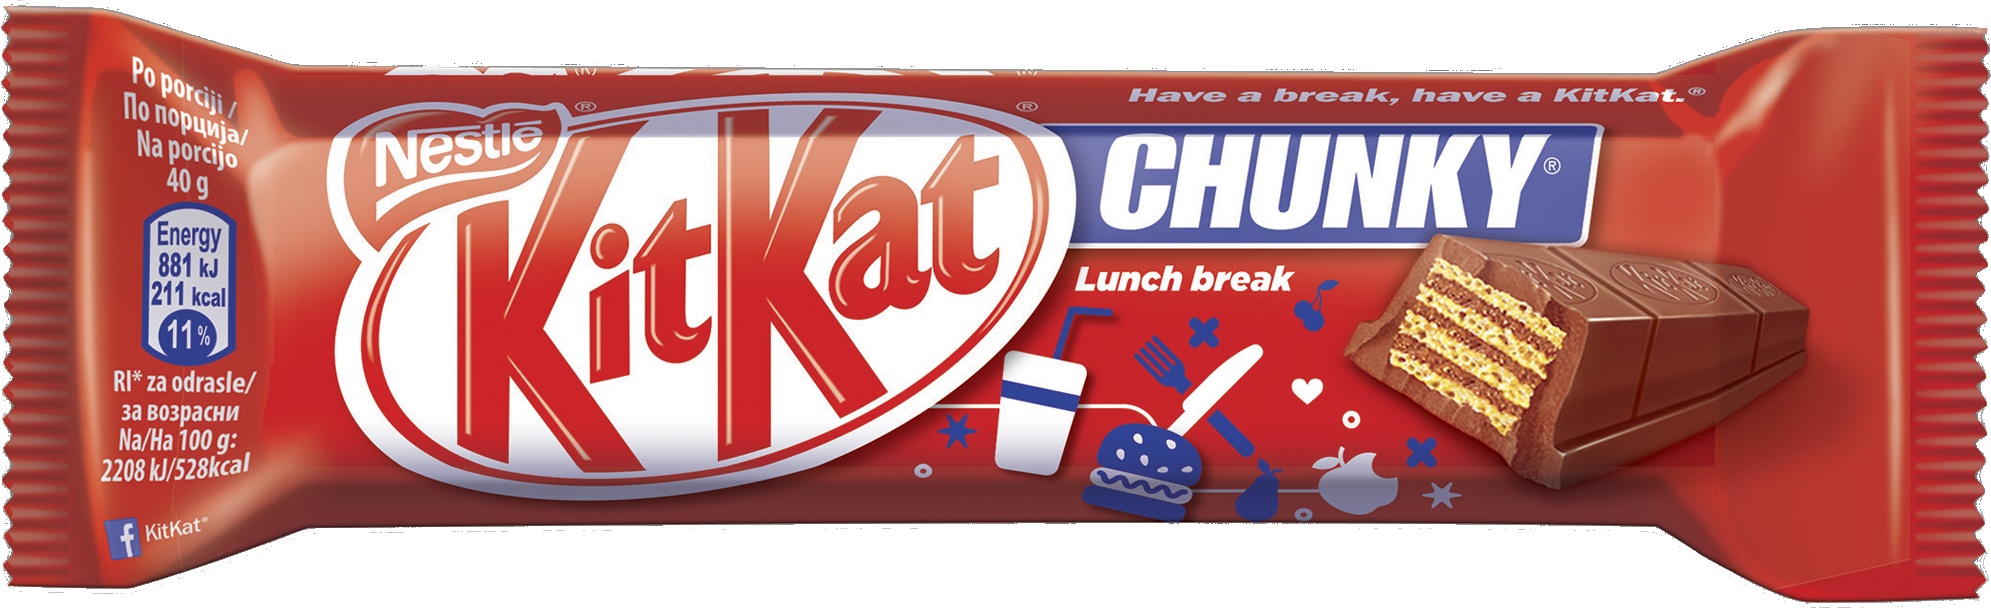 Slika za Mini bar Kit Kat chunky 40g